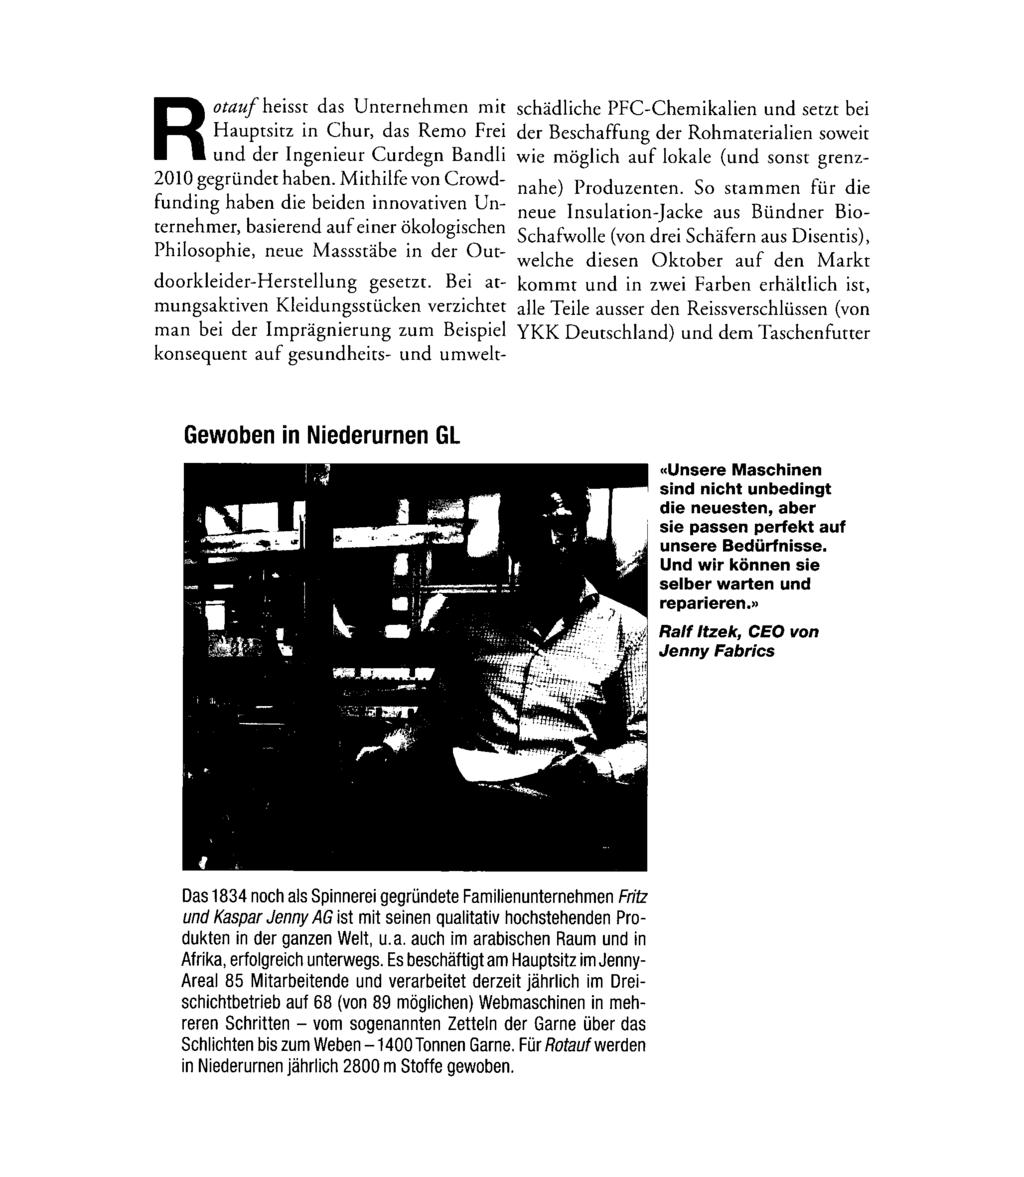 Ausschnitt Seite: 2/5 Rotauf heisst das Unternehmen mit Hauptsitz in Chur, das Remo Frei und der Ingenieur Curdegn Bandli 2010 gegründet haben.